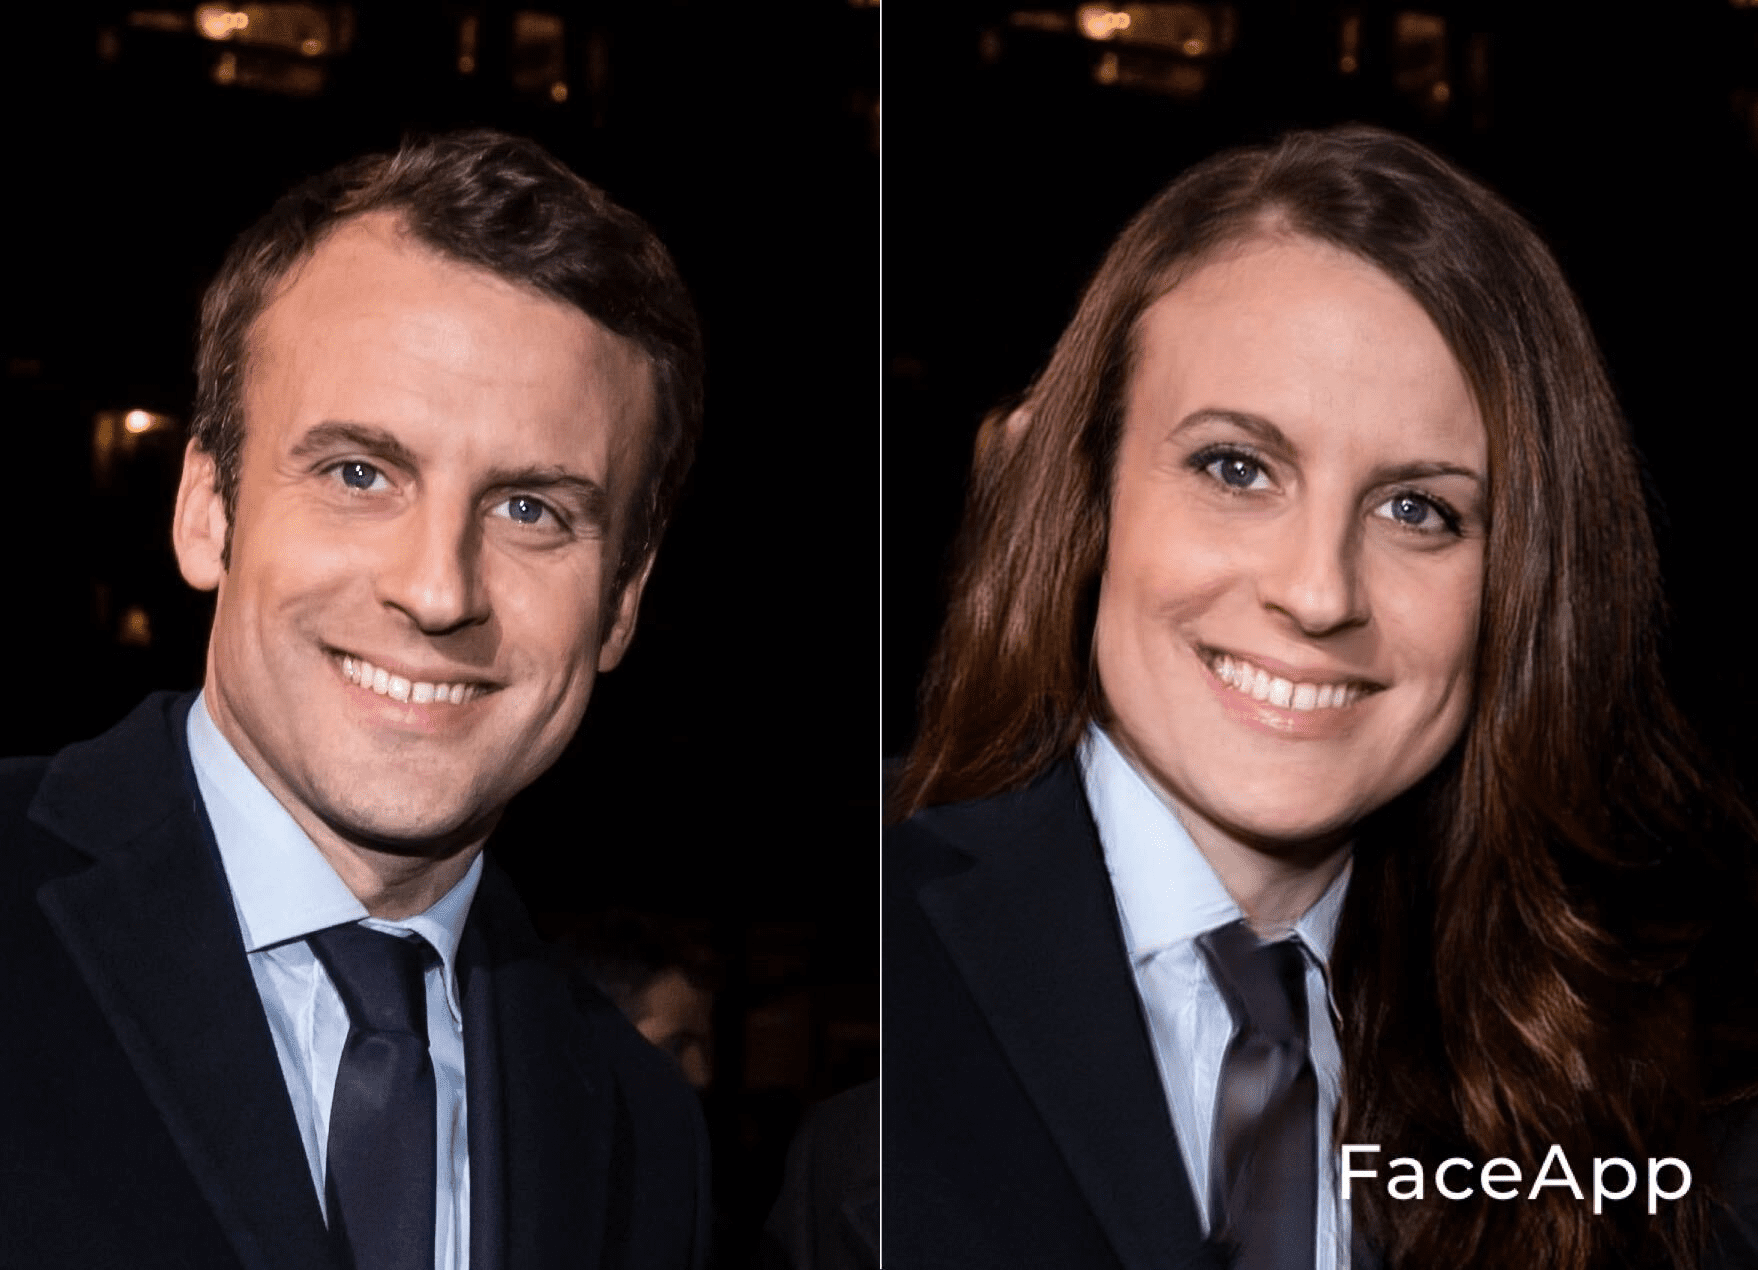 Le Président Emmanuel Macron en femme. l Source : Getty Images/Face App